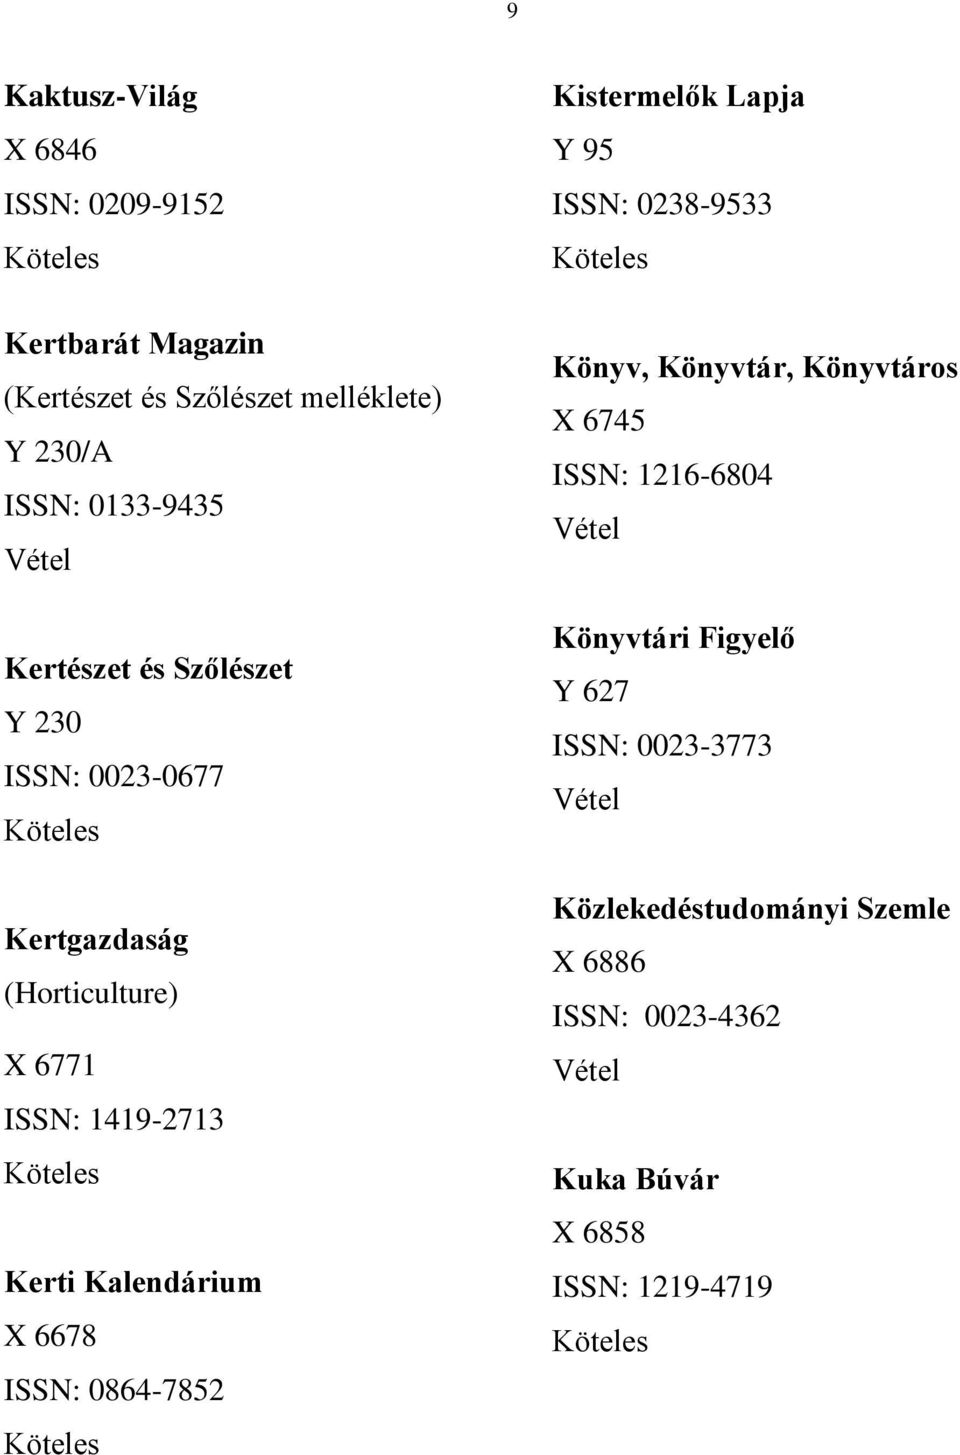 6678 ISSN: 0864-7852 Kistermelők Lapja Y 95 ISSN: 0238-9533 Könyv, Könyvtár, Könyvtáros X 6745 ISSN: 1216-6804